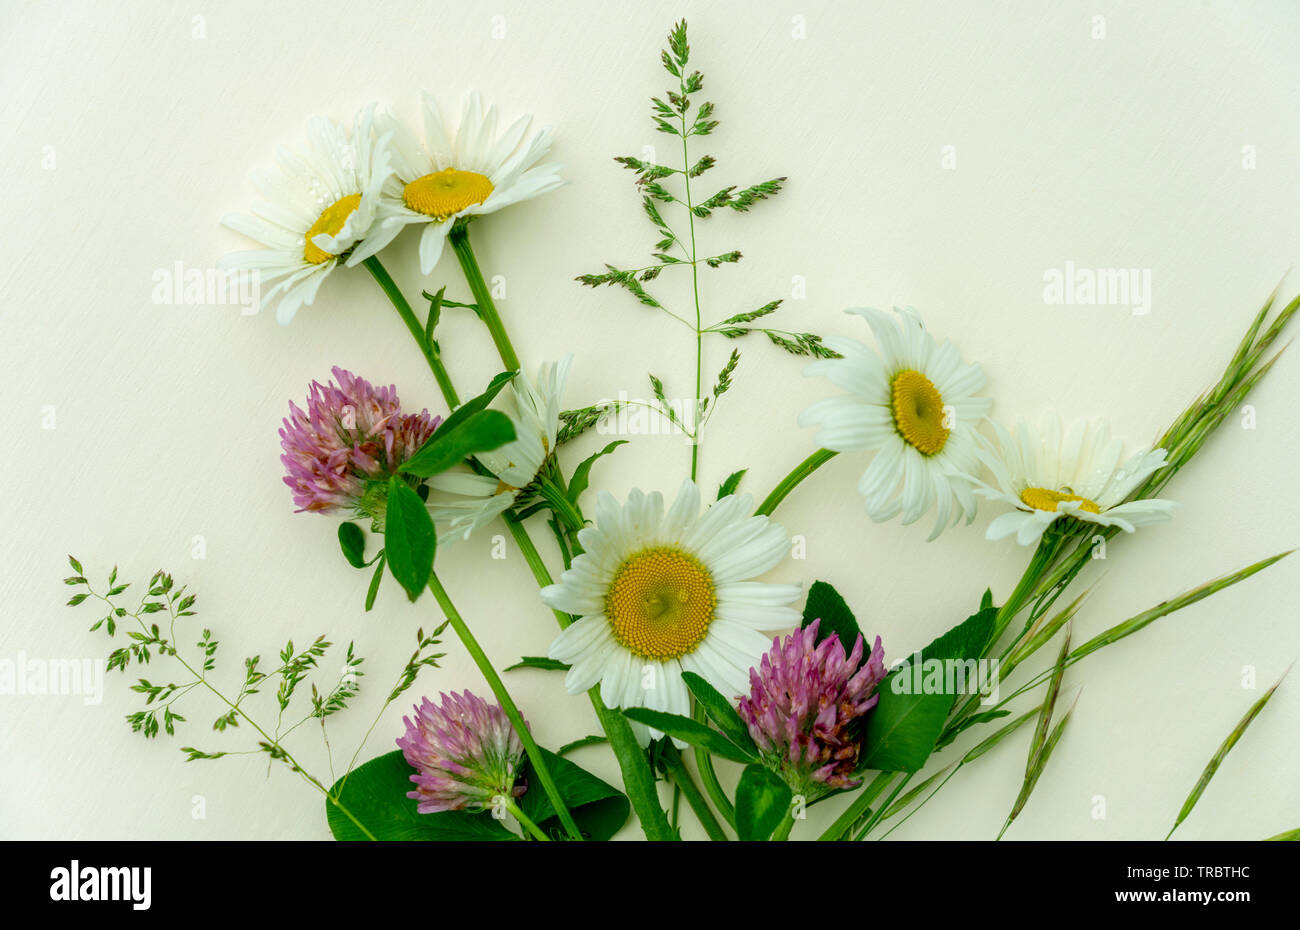 Desear flores fotografías e imágenes de alta resolución - Página 5 - Alamy